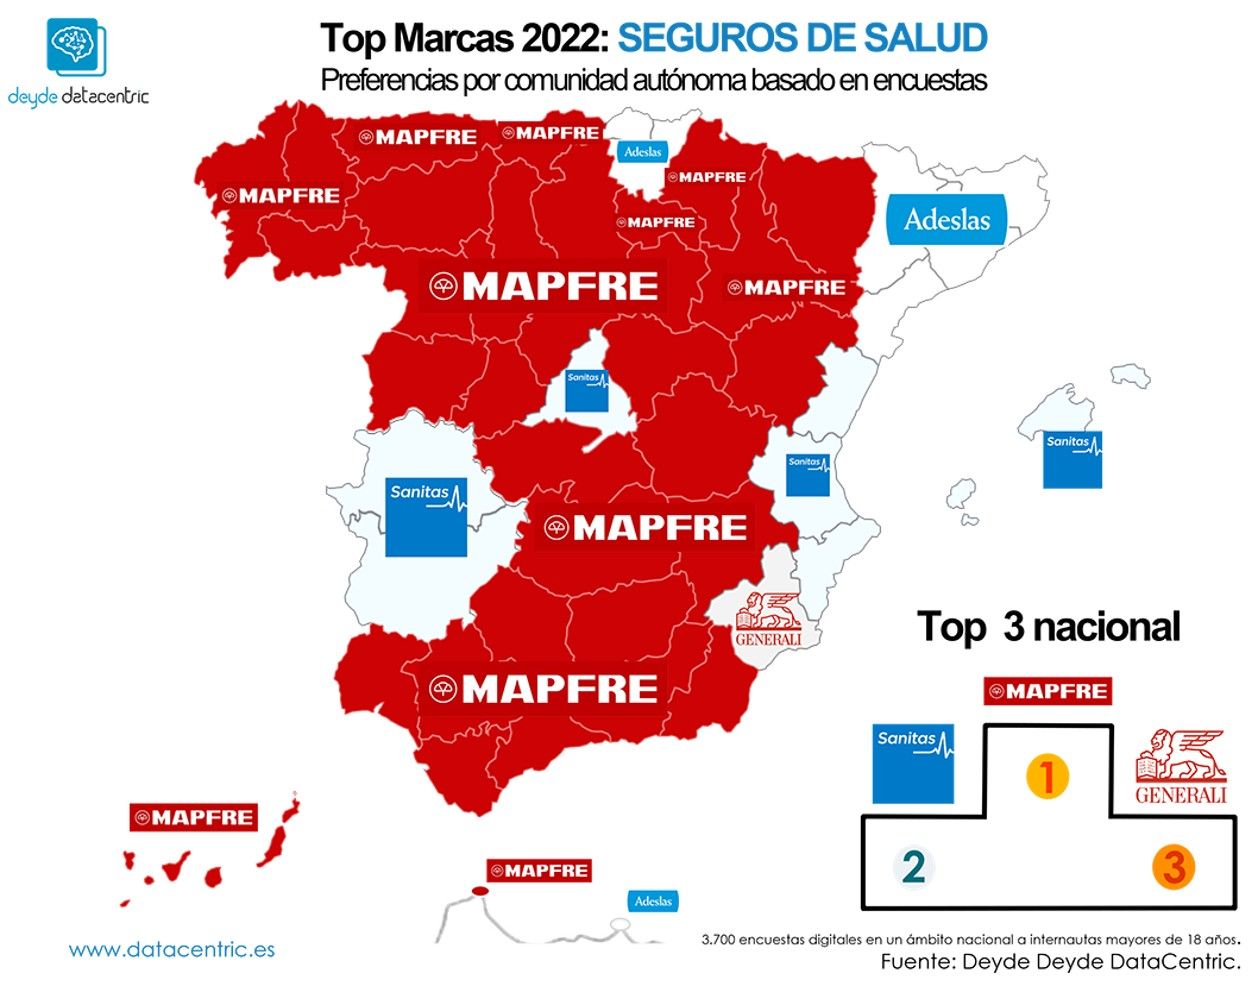 Marcas de seguros favoritas en España